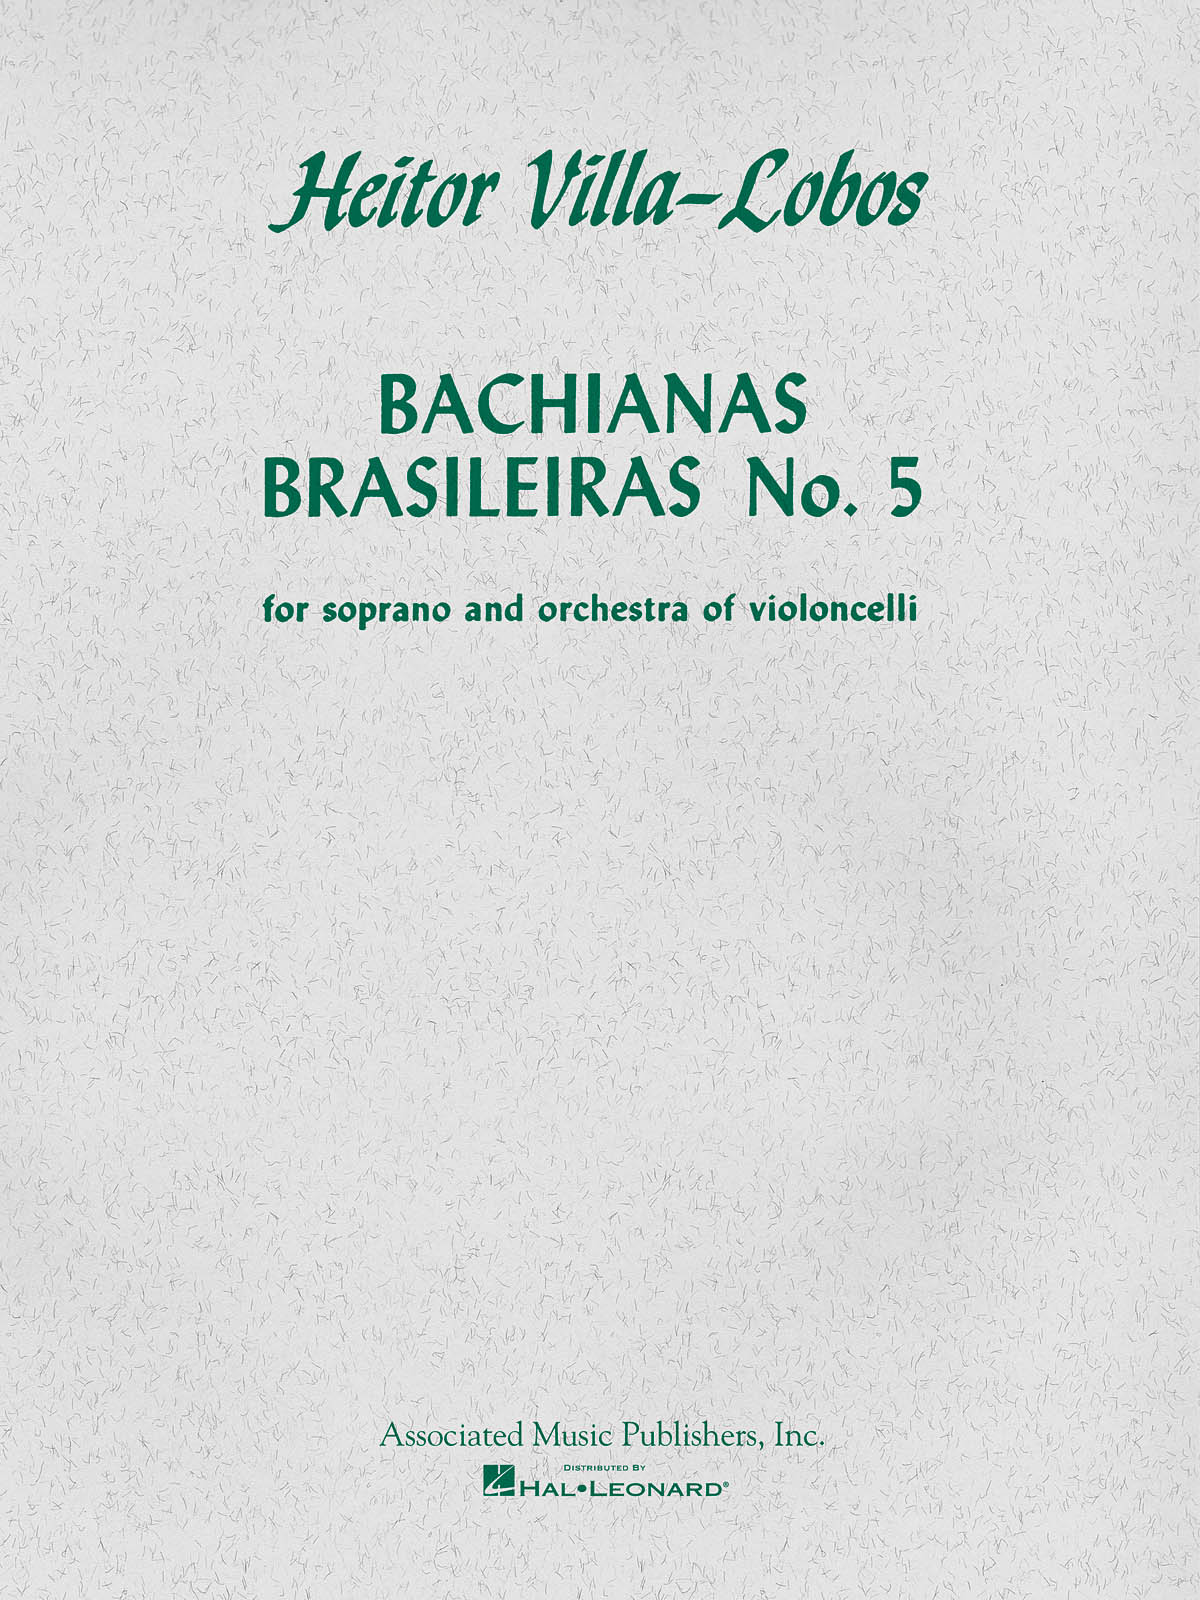 Villa-Lobos Bachianas Brasileiras No5 Soprano And Orch. Of Violoncelli (VILLA-LOBOS HEITOR)